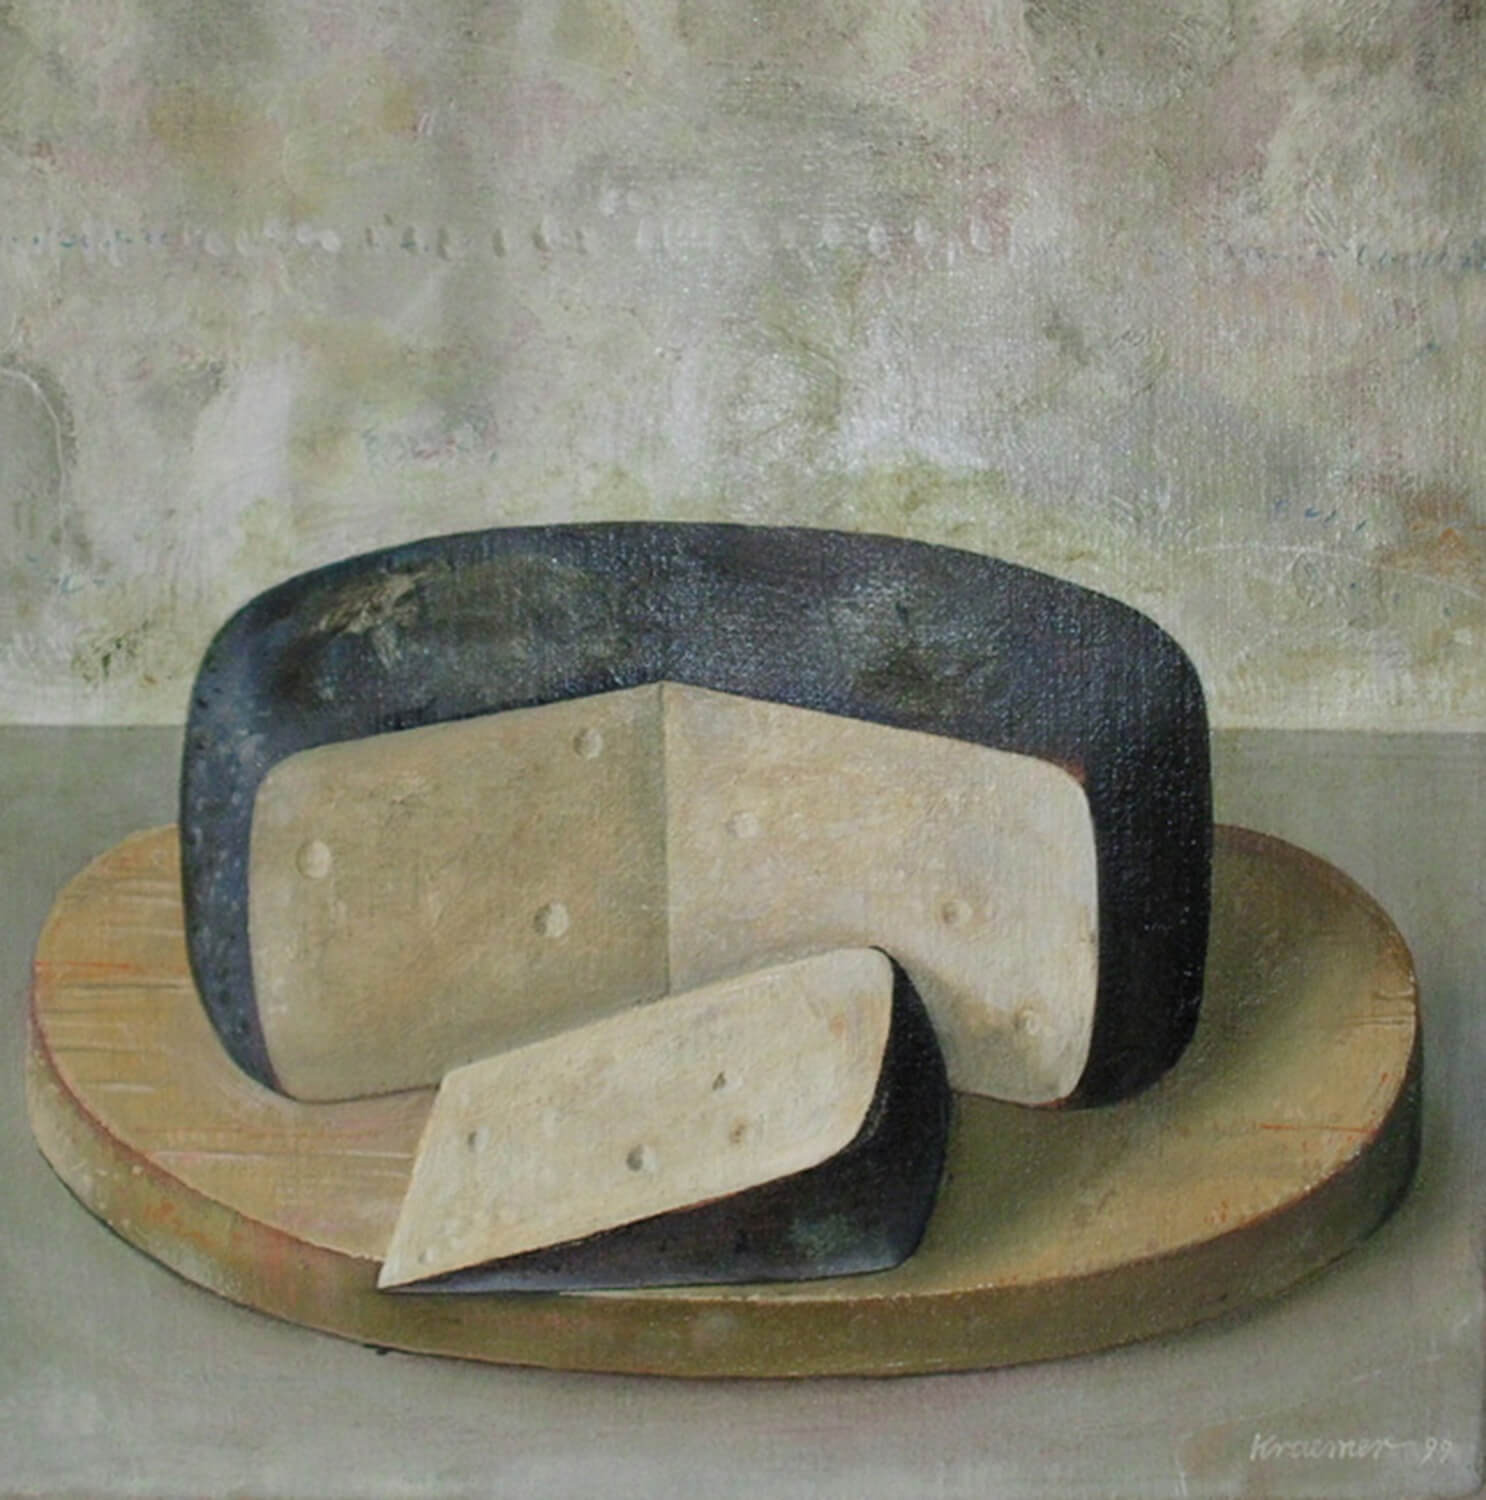 Dieter Kraemer, Parmigiano Reggiano, 1999, Öl auf Leinwand, 40 x 40 cm